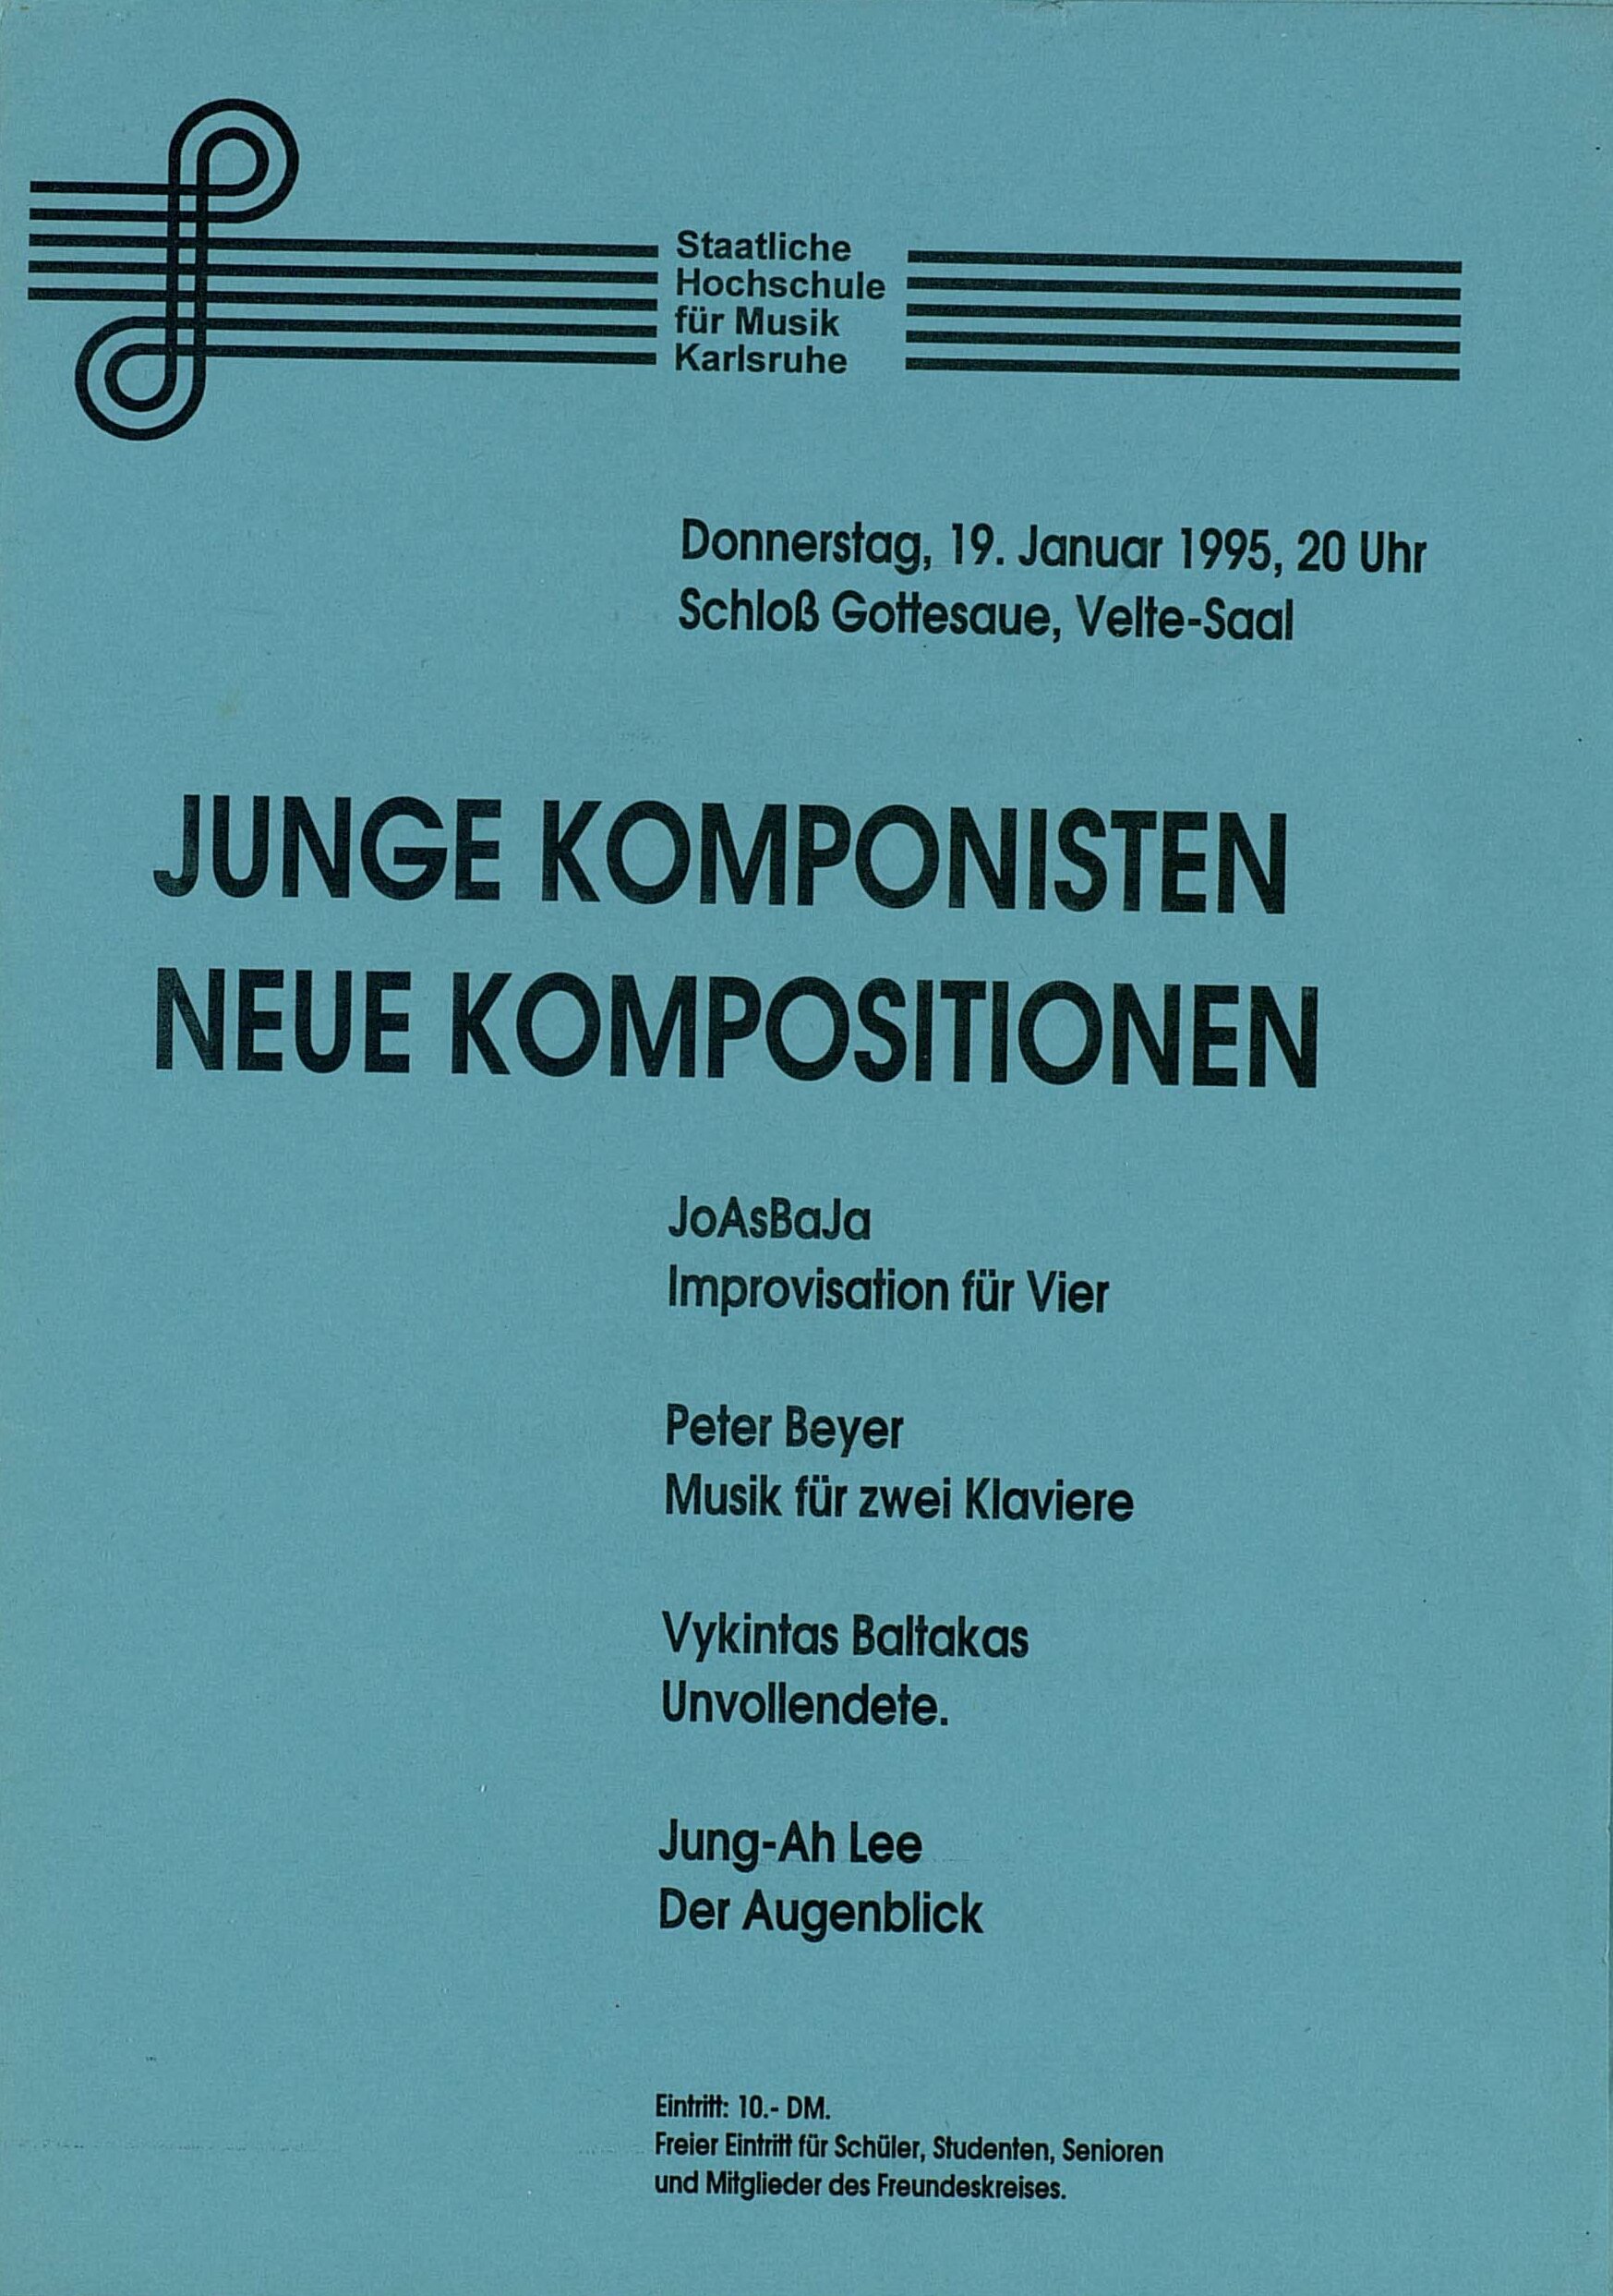 Konzertprogramm gedruckt auf blauem Papier.